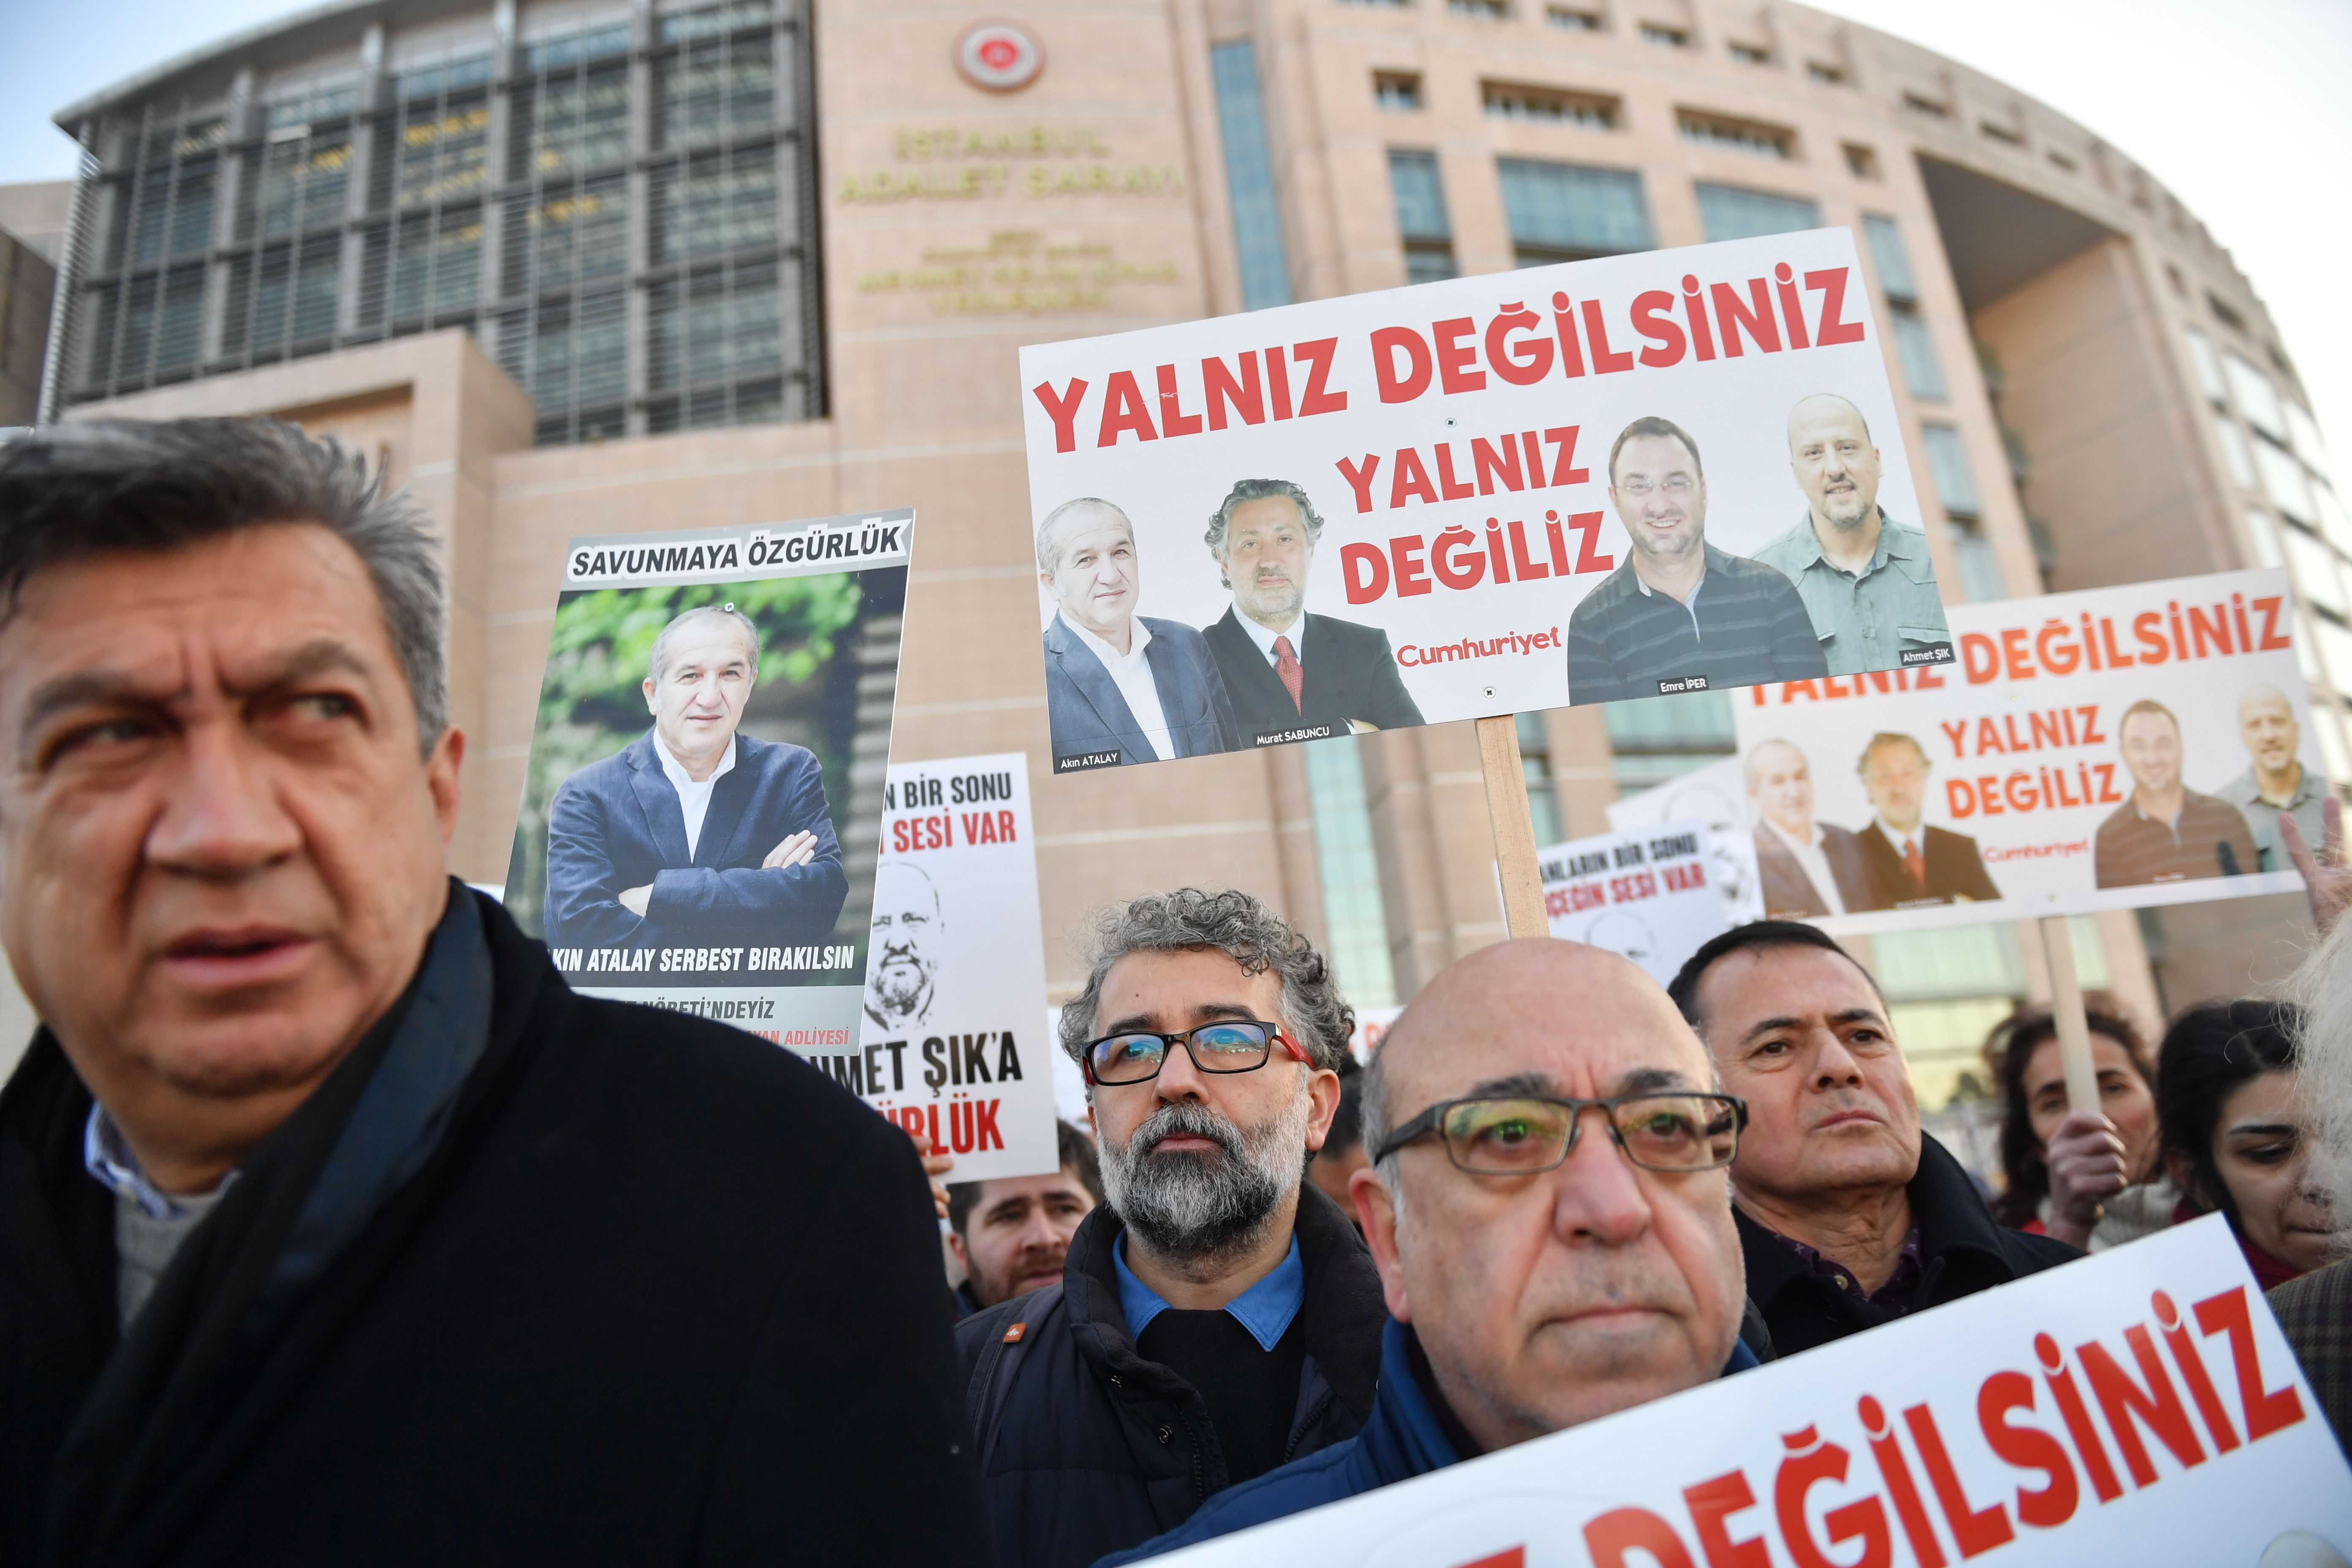 لافتات منددة بقمع الصحافة فى تركيا